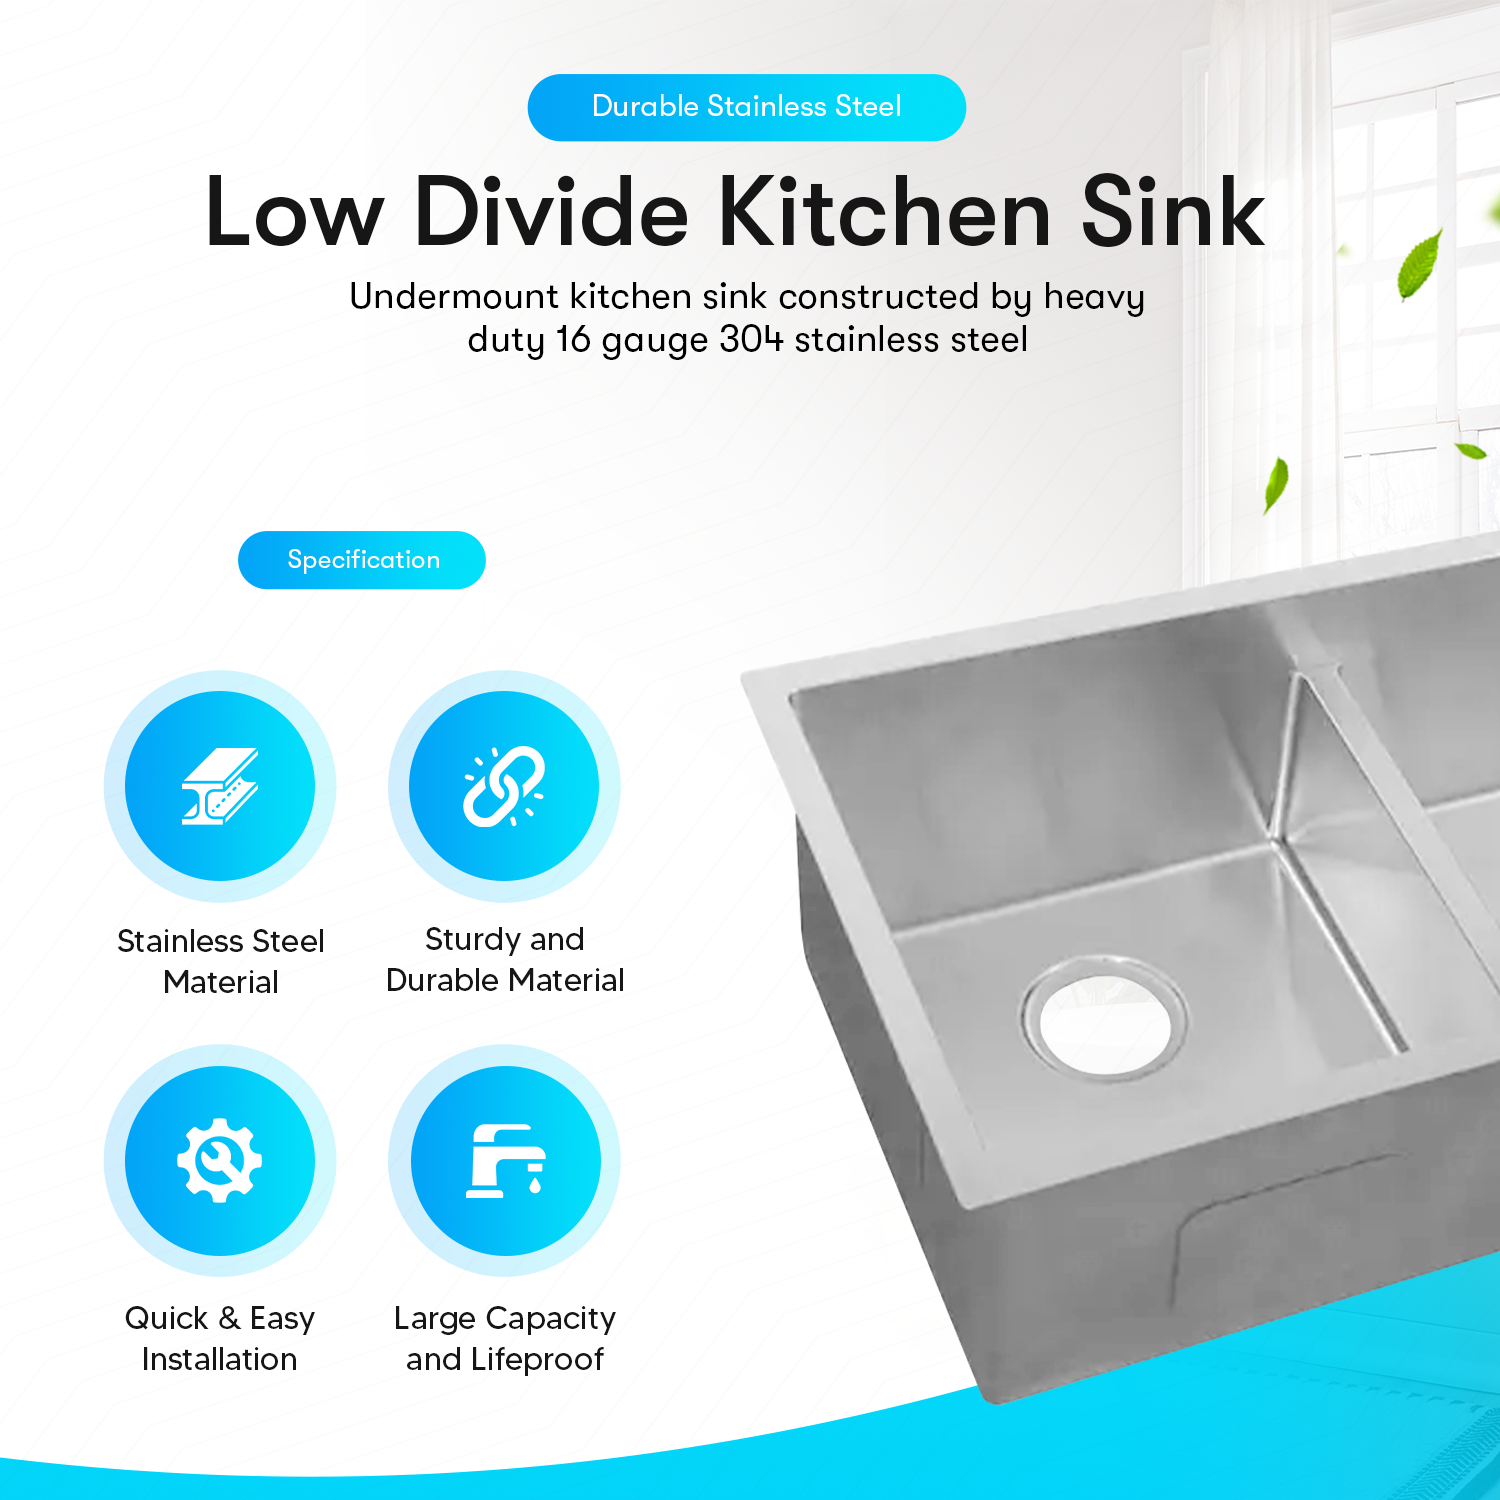 Low Divide Undermount Kitchen Sink (32" X 19" x 10")